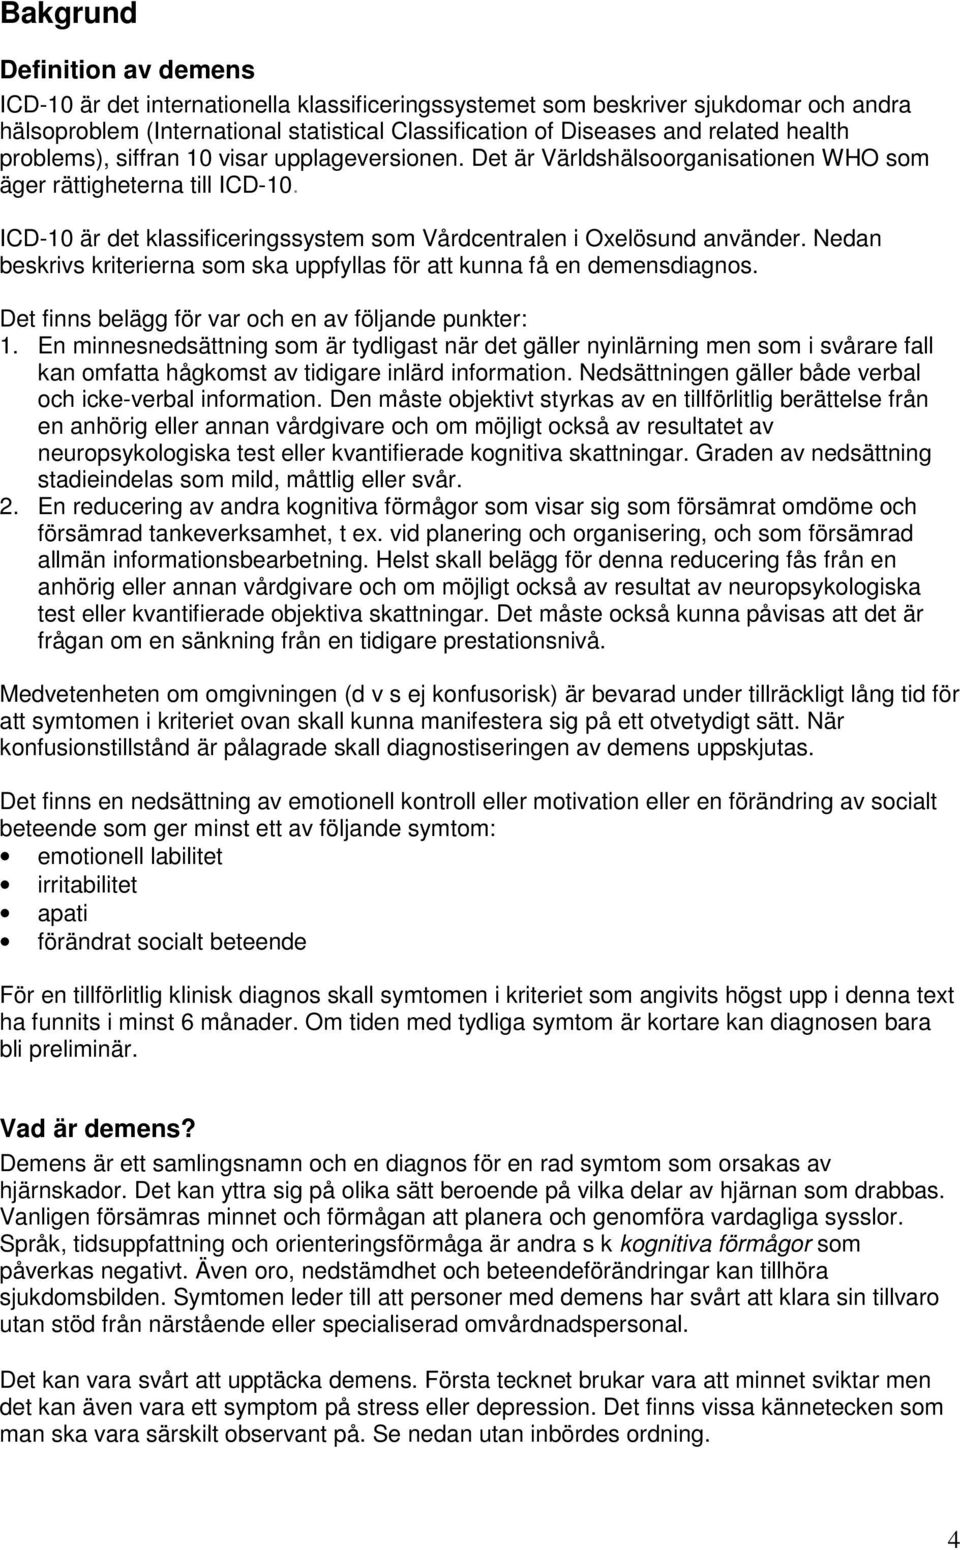 ICD-10 är det klassificeringssystem som Vårdcentralen i Oxelösund använder. Nedan beskrivs kriterierna som ska uppfyllas för att kunna få en demensdiagnos.